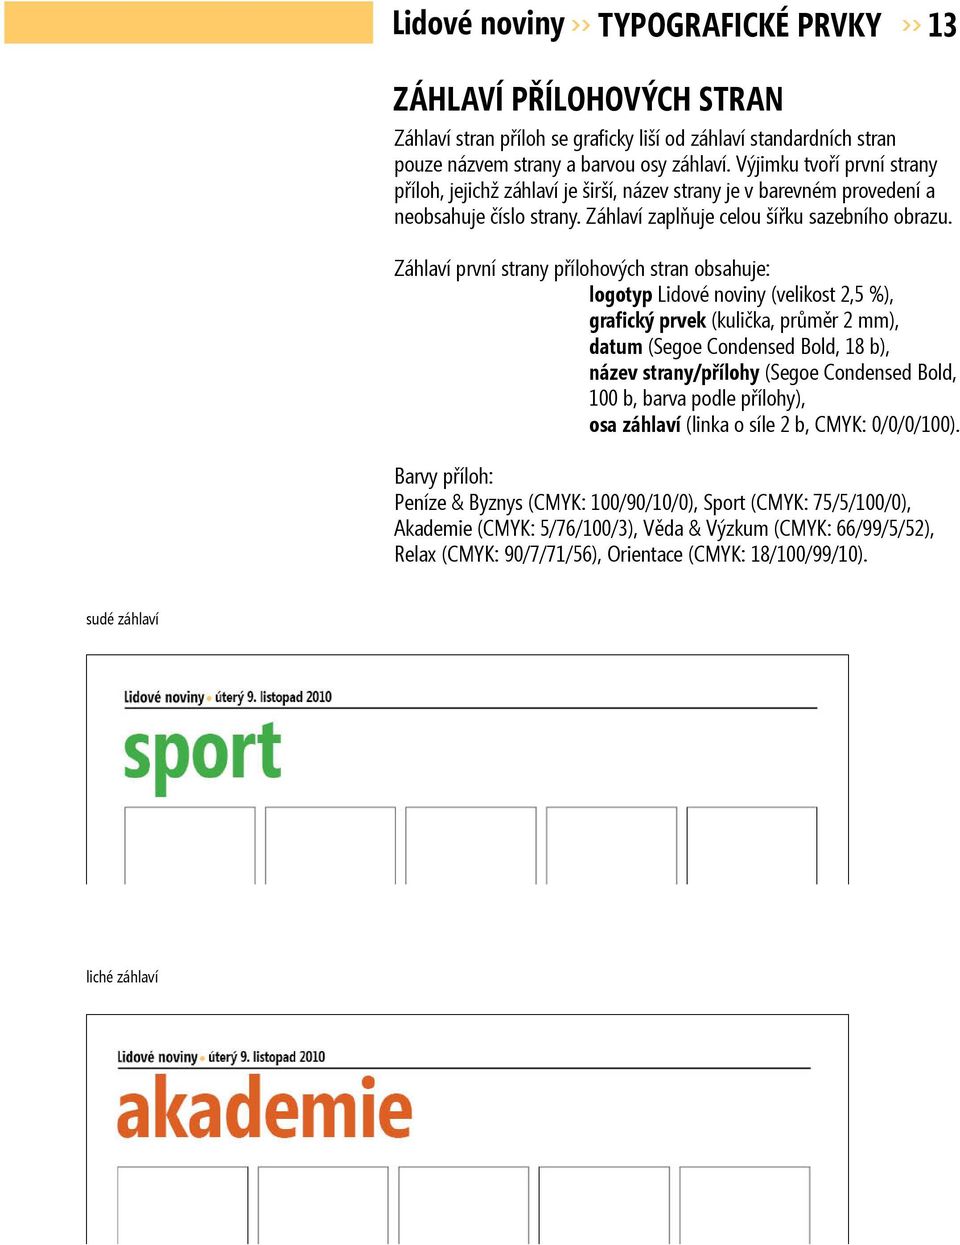 Záhlaví první strany přílohových stran obsahuje: logotyp Lidové noviny (velikost 2,5 %), grafický prvek (kulička, průměr 2 mm), datum (Segoe Condensed Bold, 18 b), název strany/přílohy (Segoe